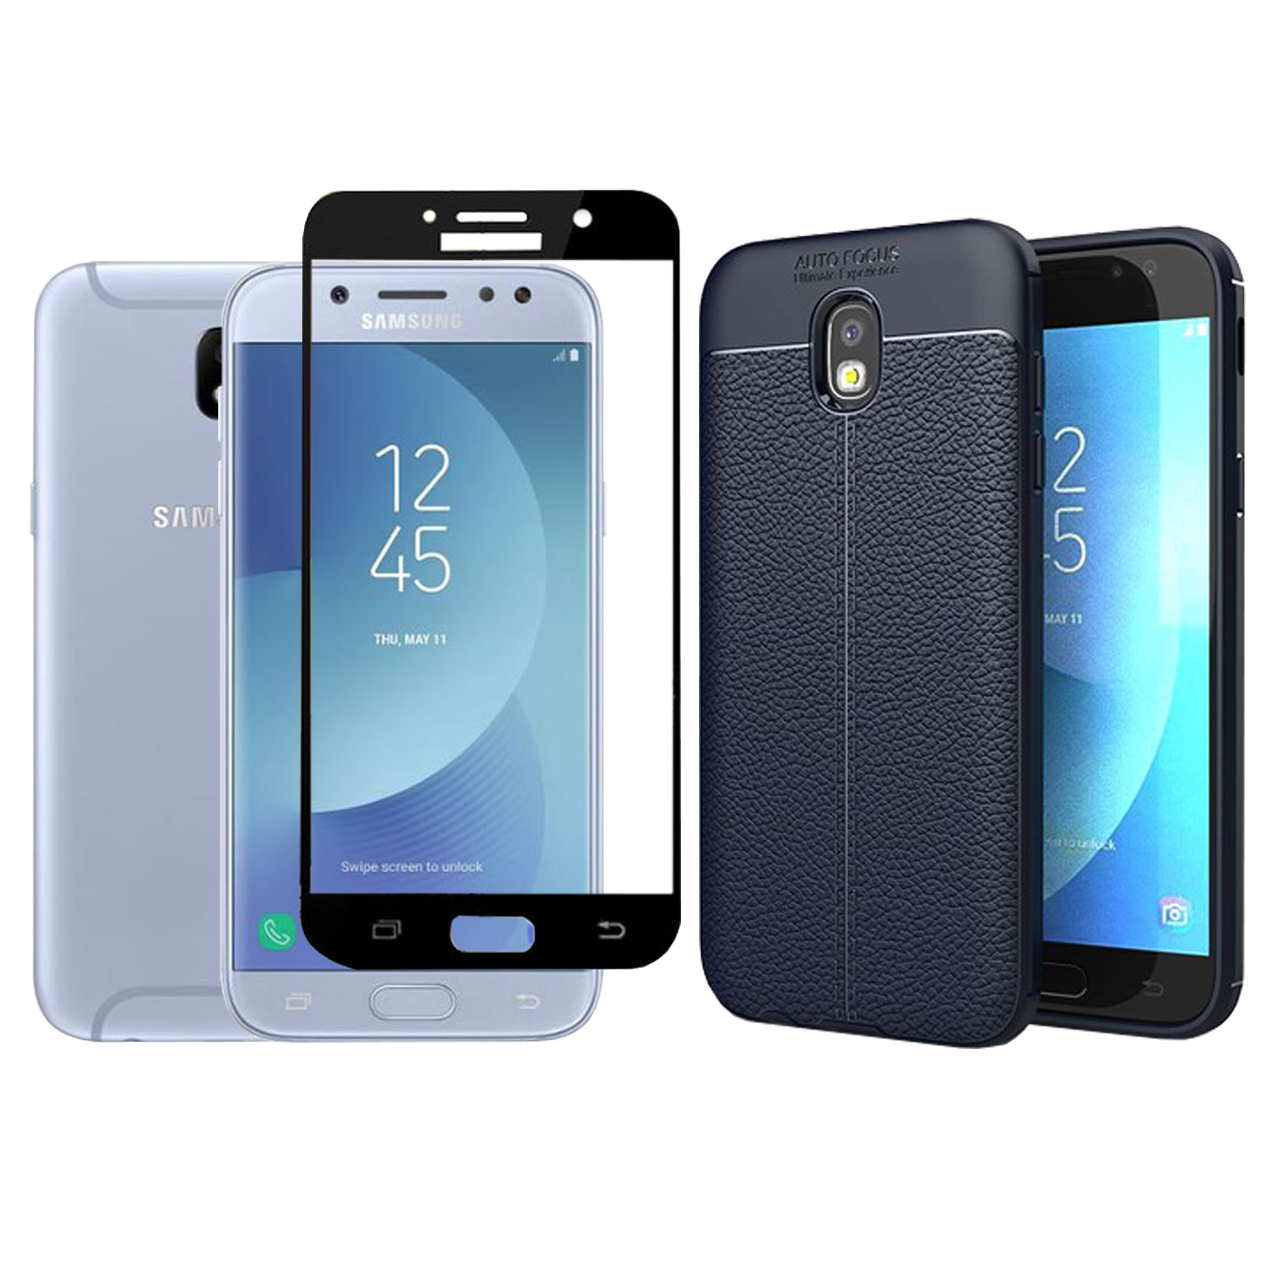     کاور ری گان مدل Auto- J7pro مناسب برای گوشی موبایل سامسونگ Galaxy J7 pro/J730 به همراه محافظ صفحه نمایش 